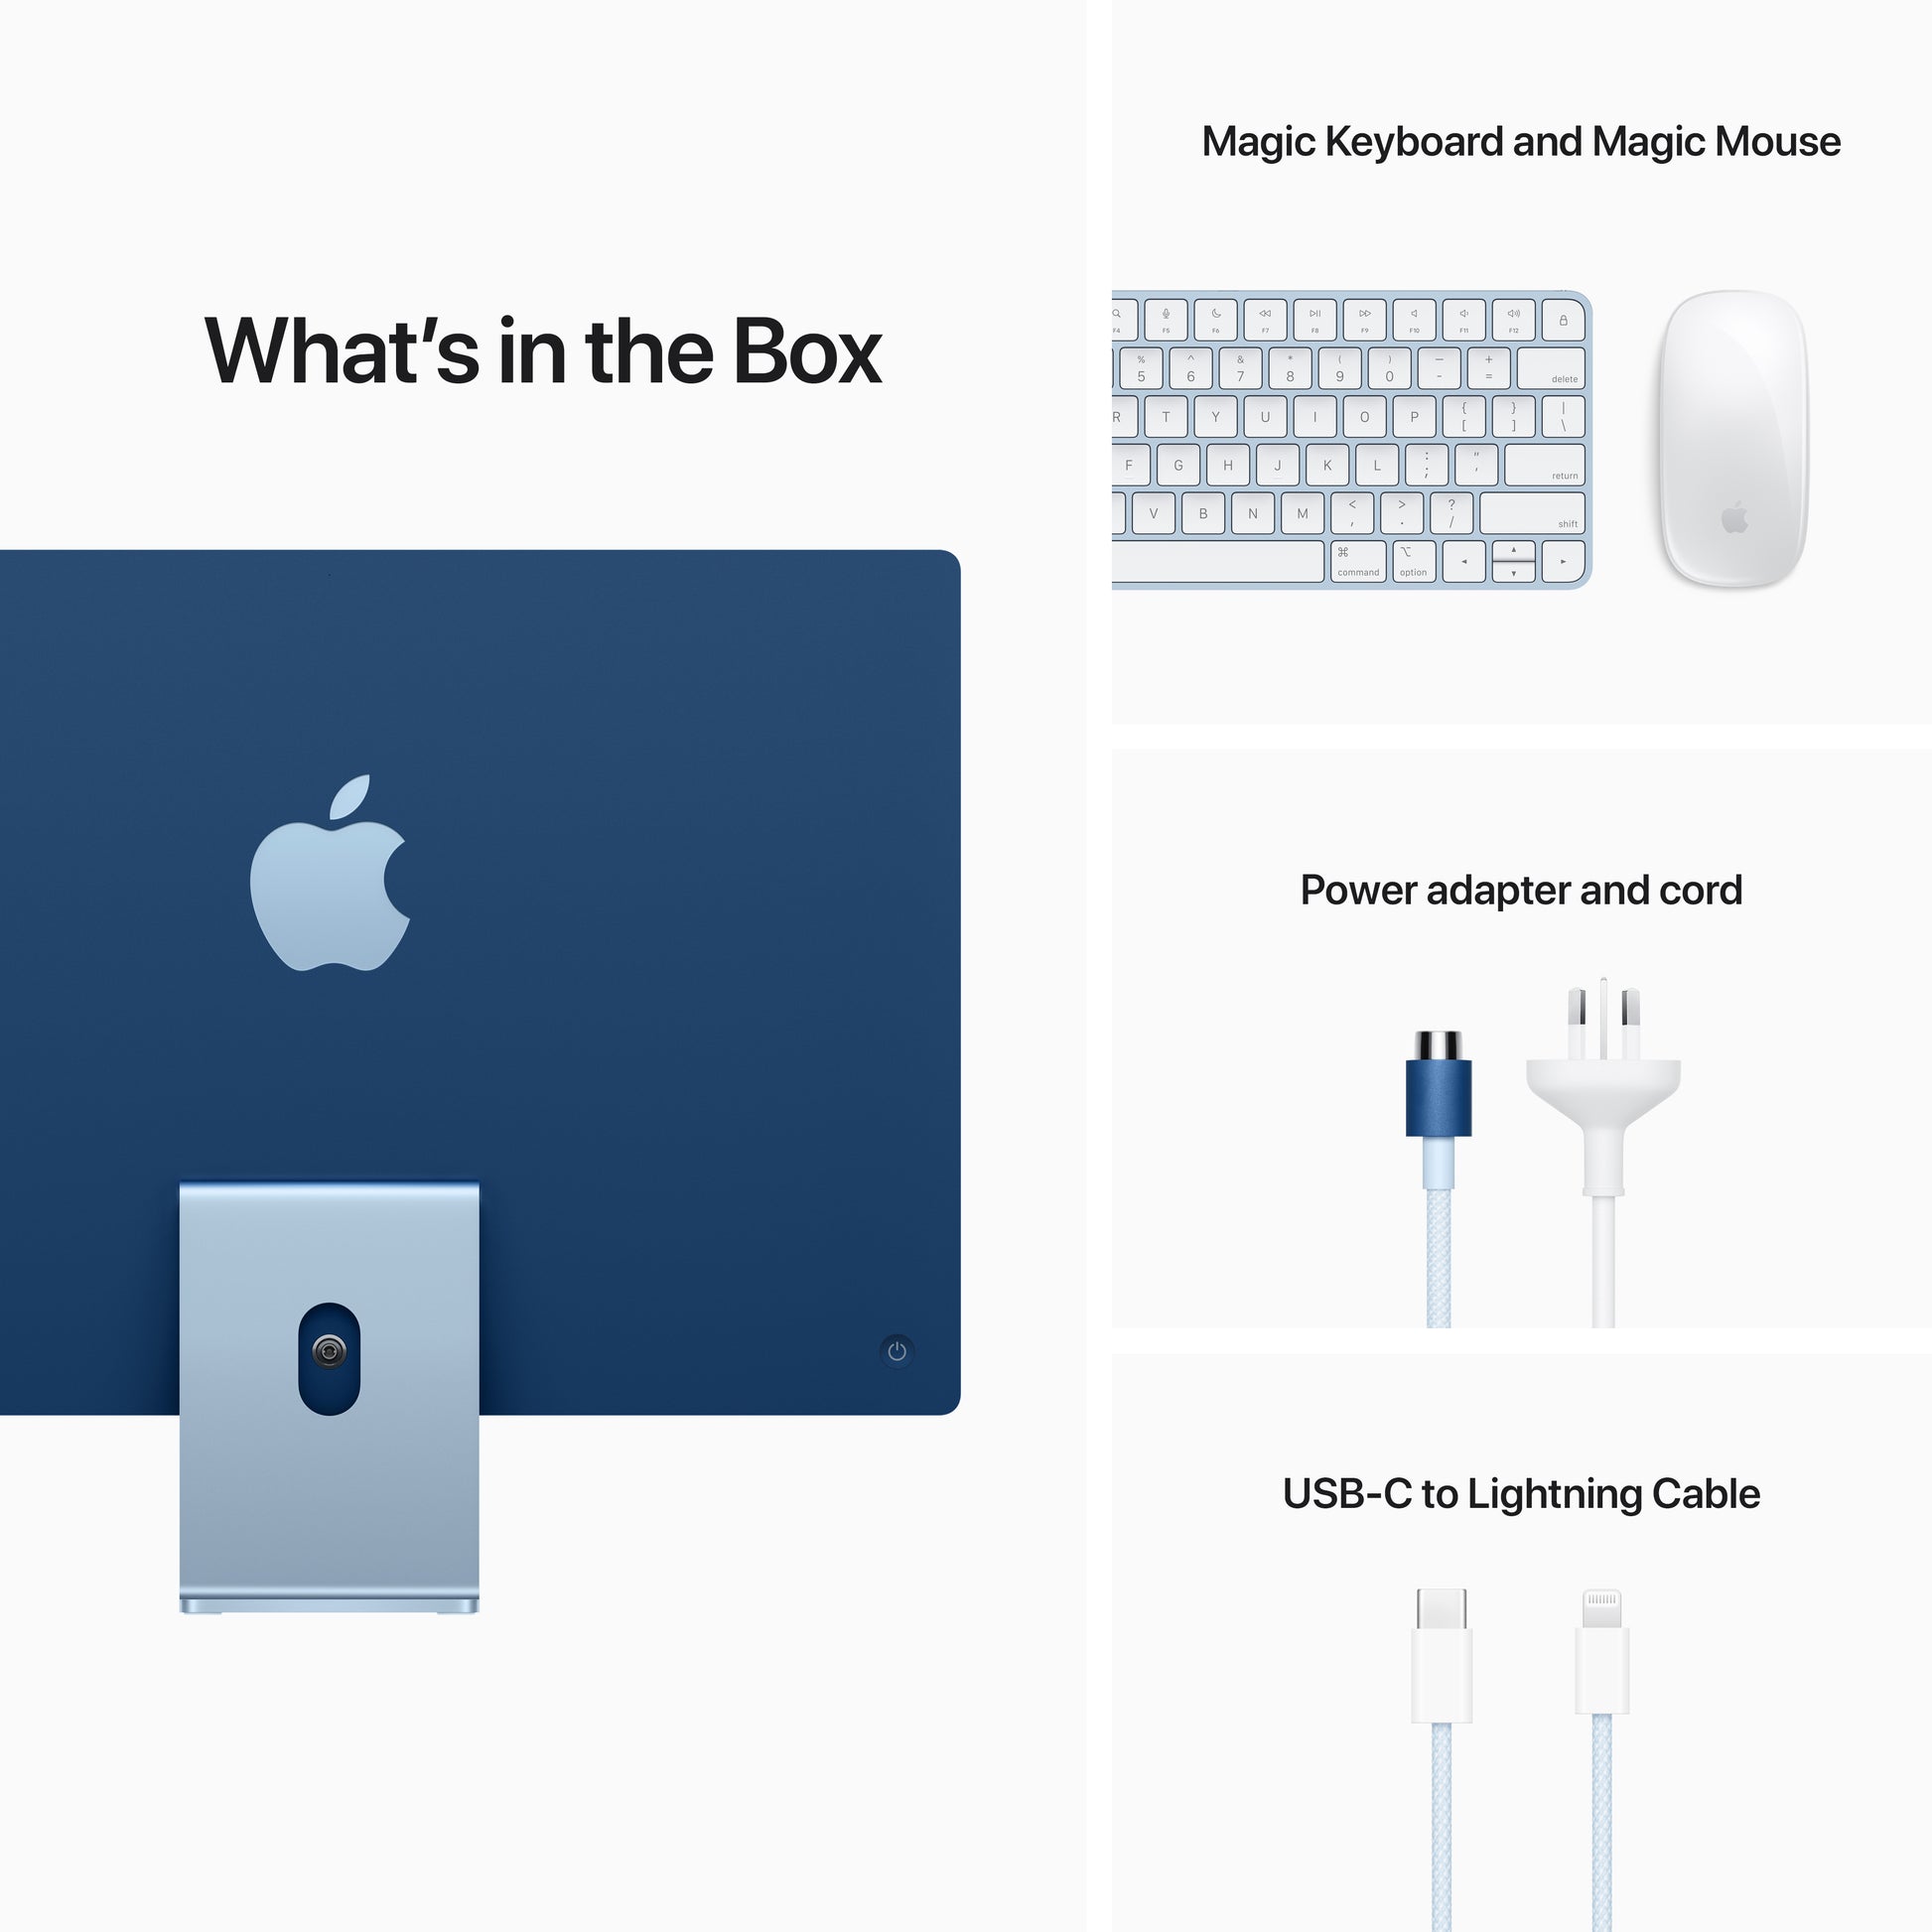 Apple iMac 24-inch | M1 | 8-core CPU | 7-core GPU | Blue